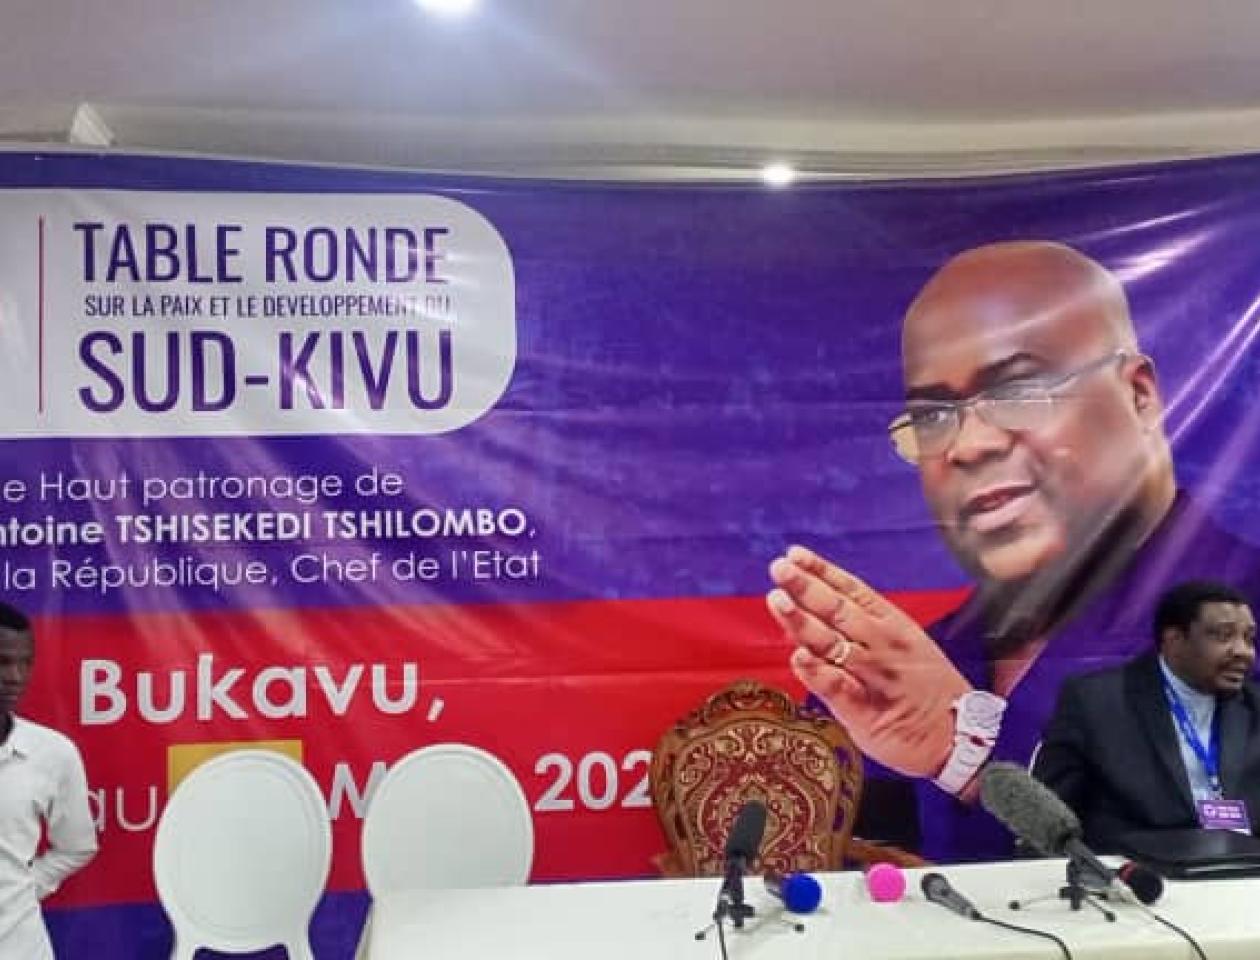 Affiche annonçant la table ronde sur la paix et le développement à Bukavu